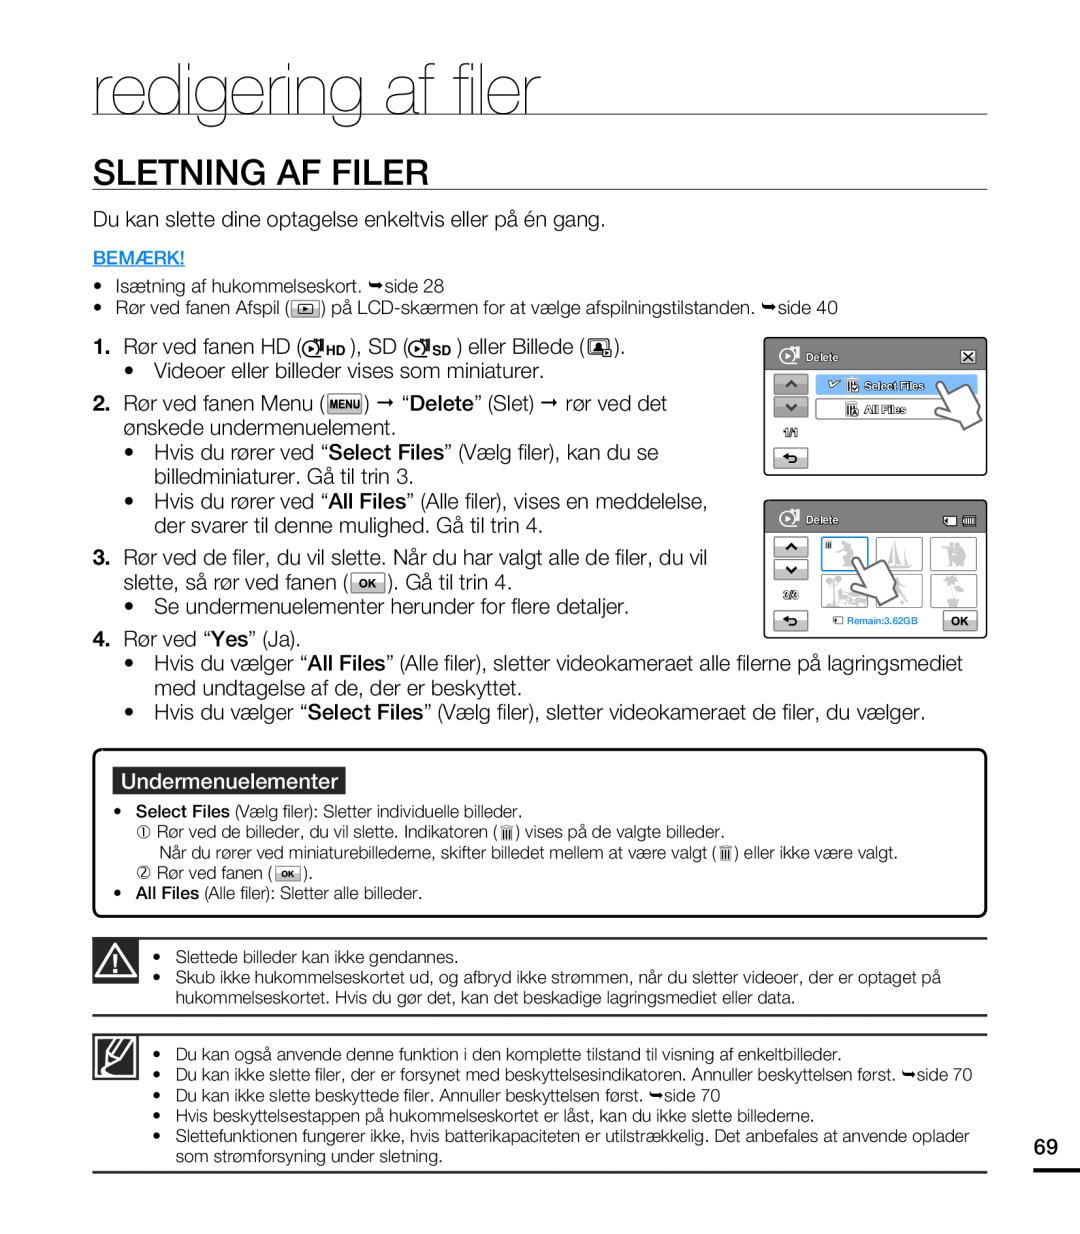 Samsung HMX-T10BP/EDC, HMX-T10WP/EDC manual redigering af fi ler, Sletning Af Filer, Undermenuelementer 